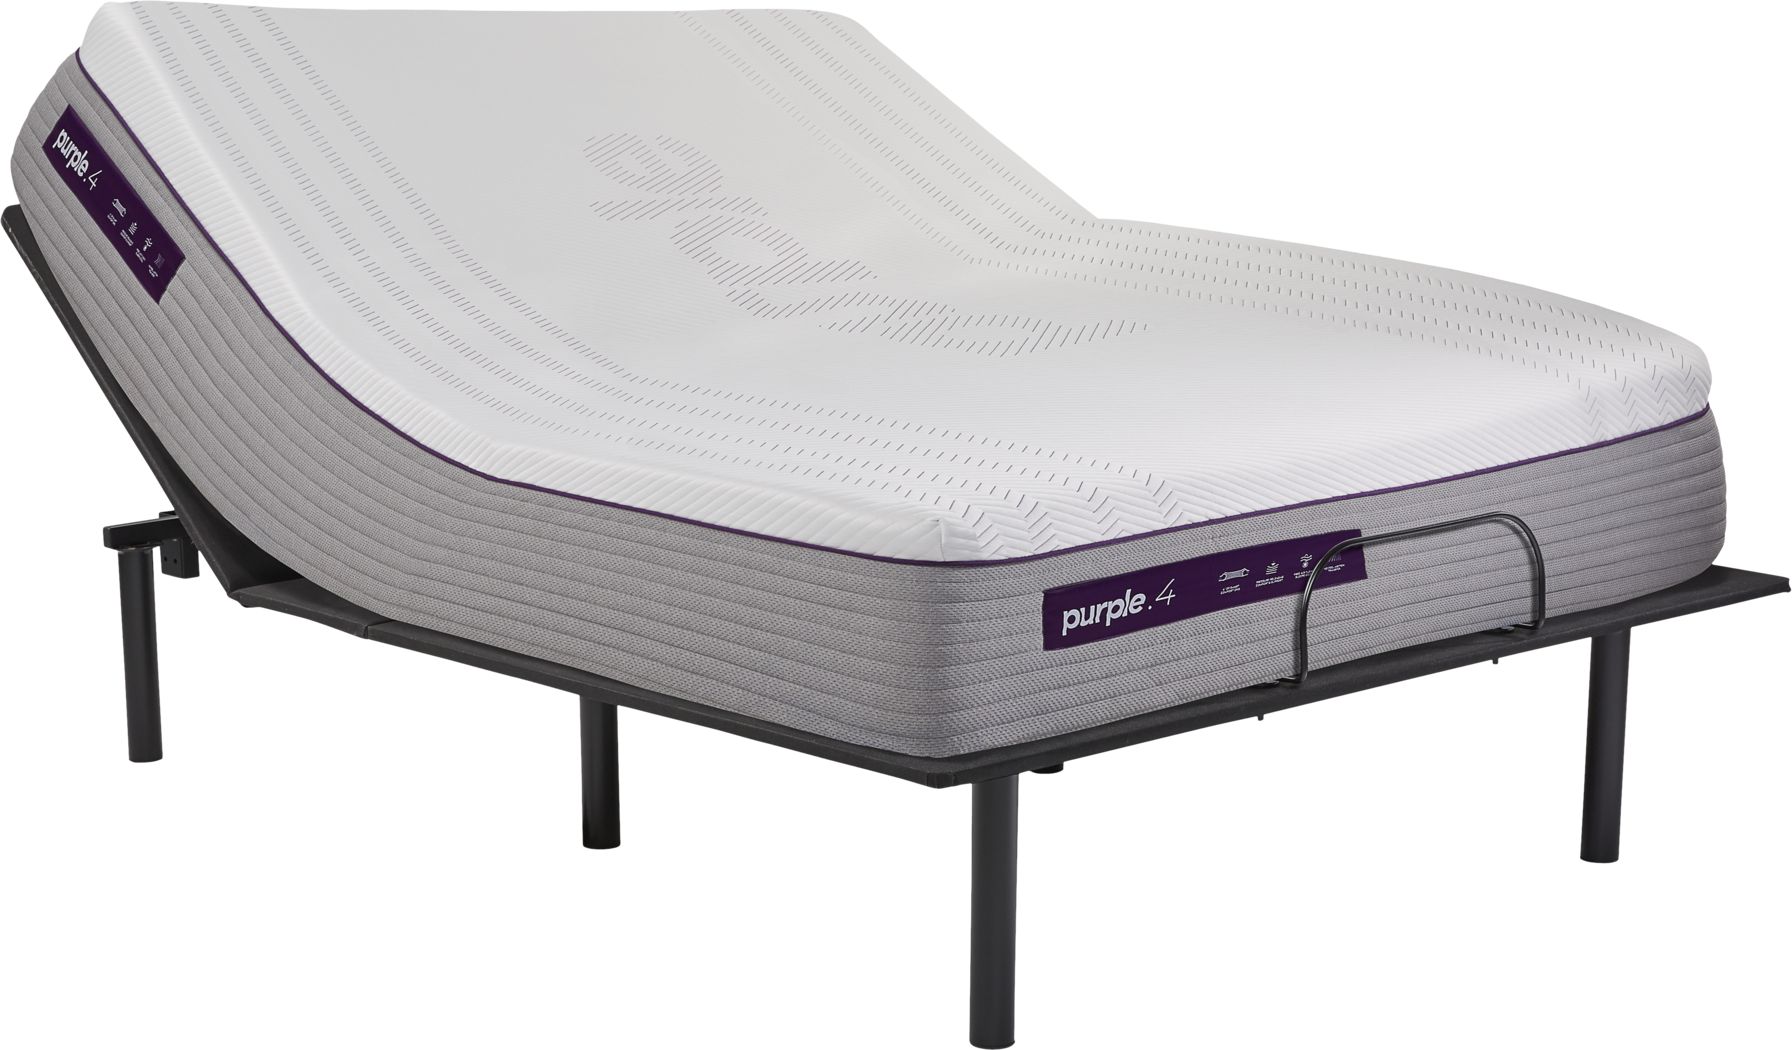 purple 4 mattress queen